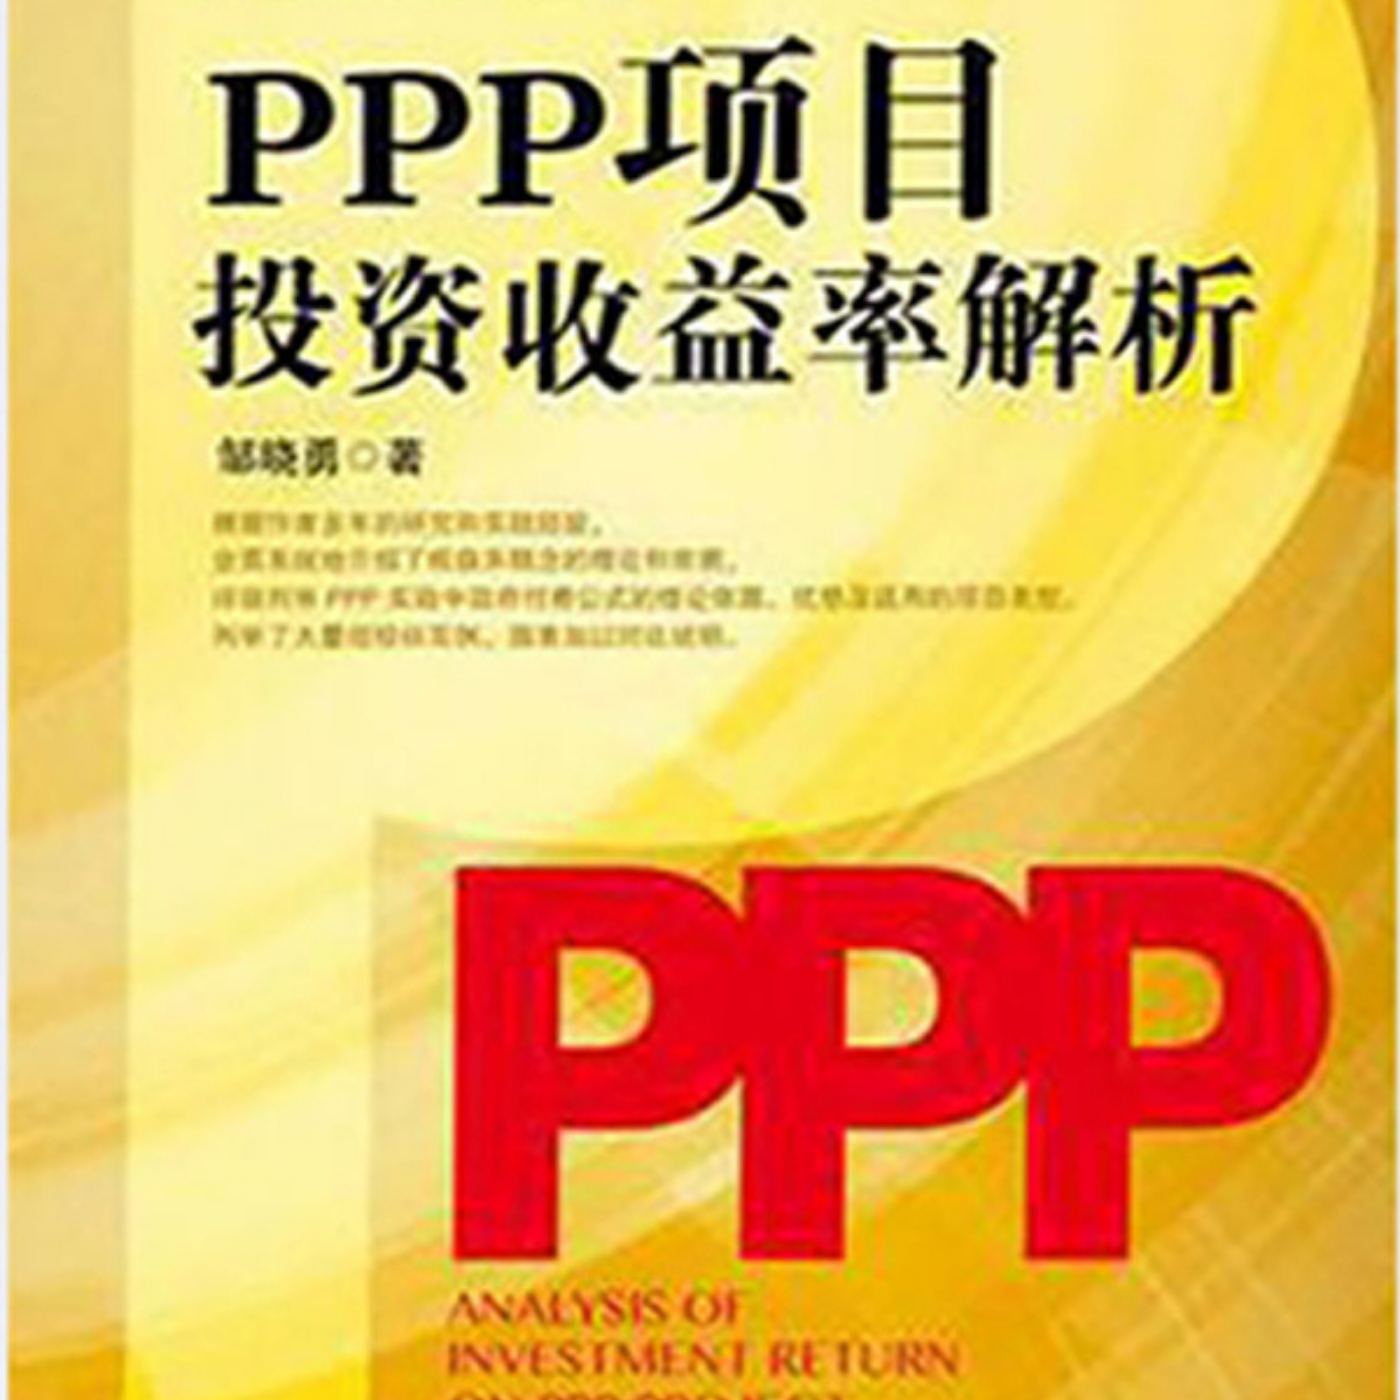 PPP项目投资收益率解析